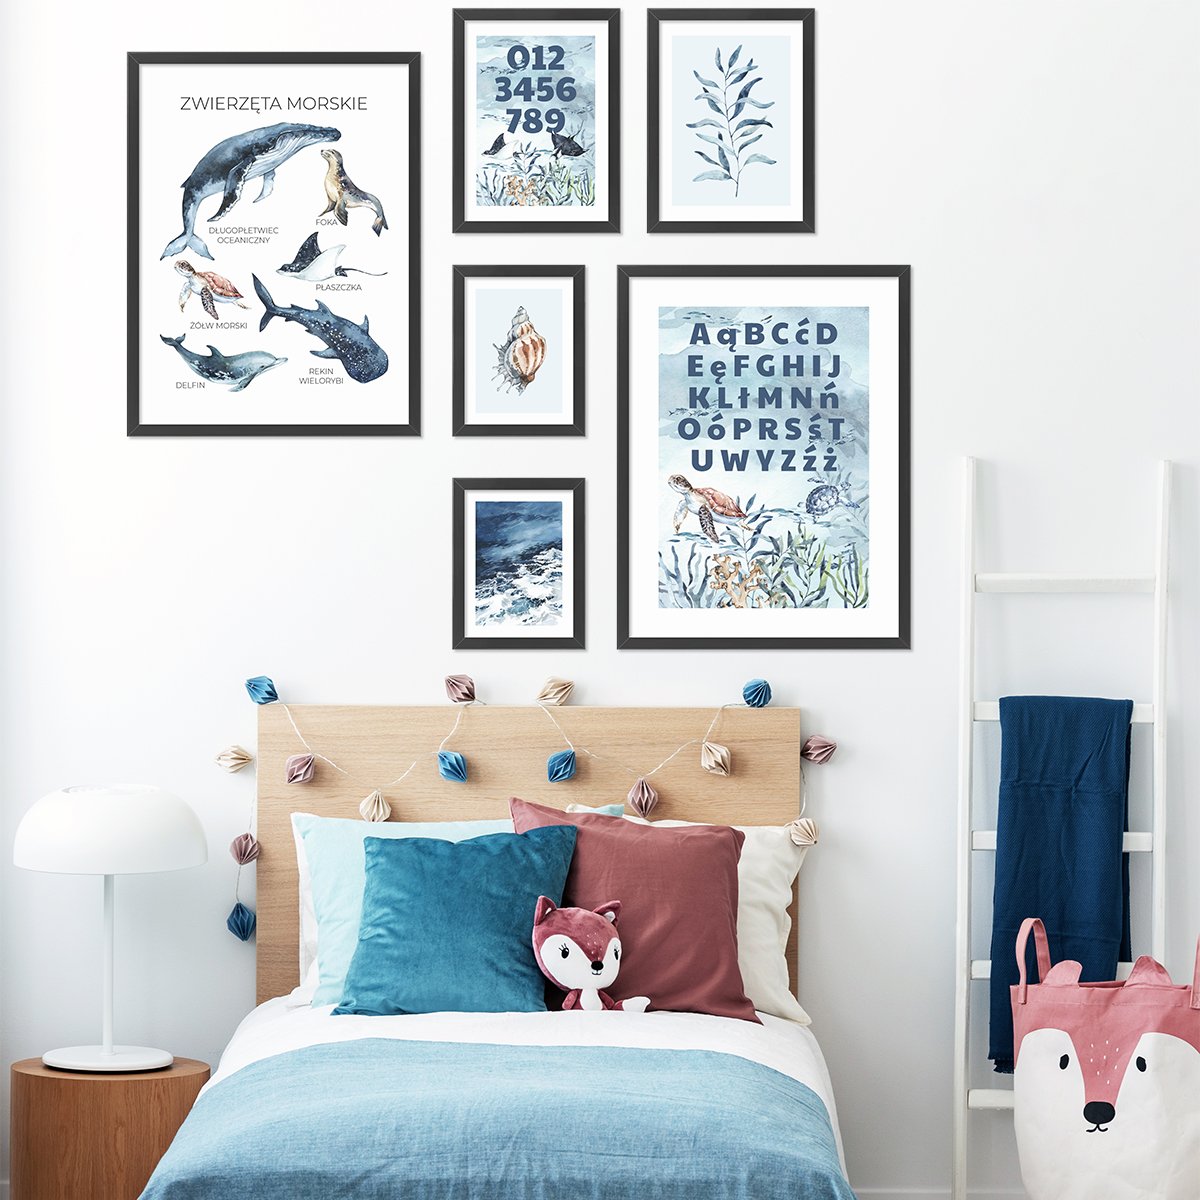 Galeria ścienna dla dzieci w morskim stylu - plakaty z alfabetem, cyframi i zwierzętami morskimi w czarnych ramkach powieszone nad dziecięcym łóżkiem#ramka_czarna